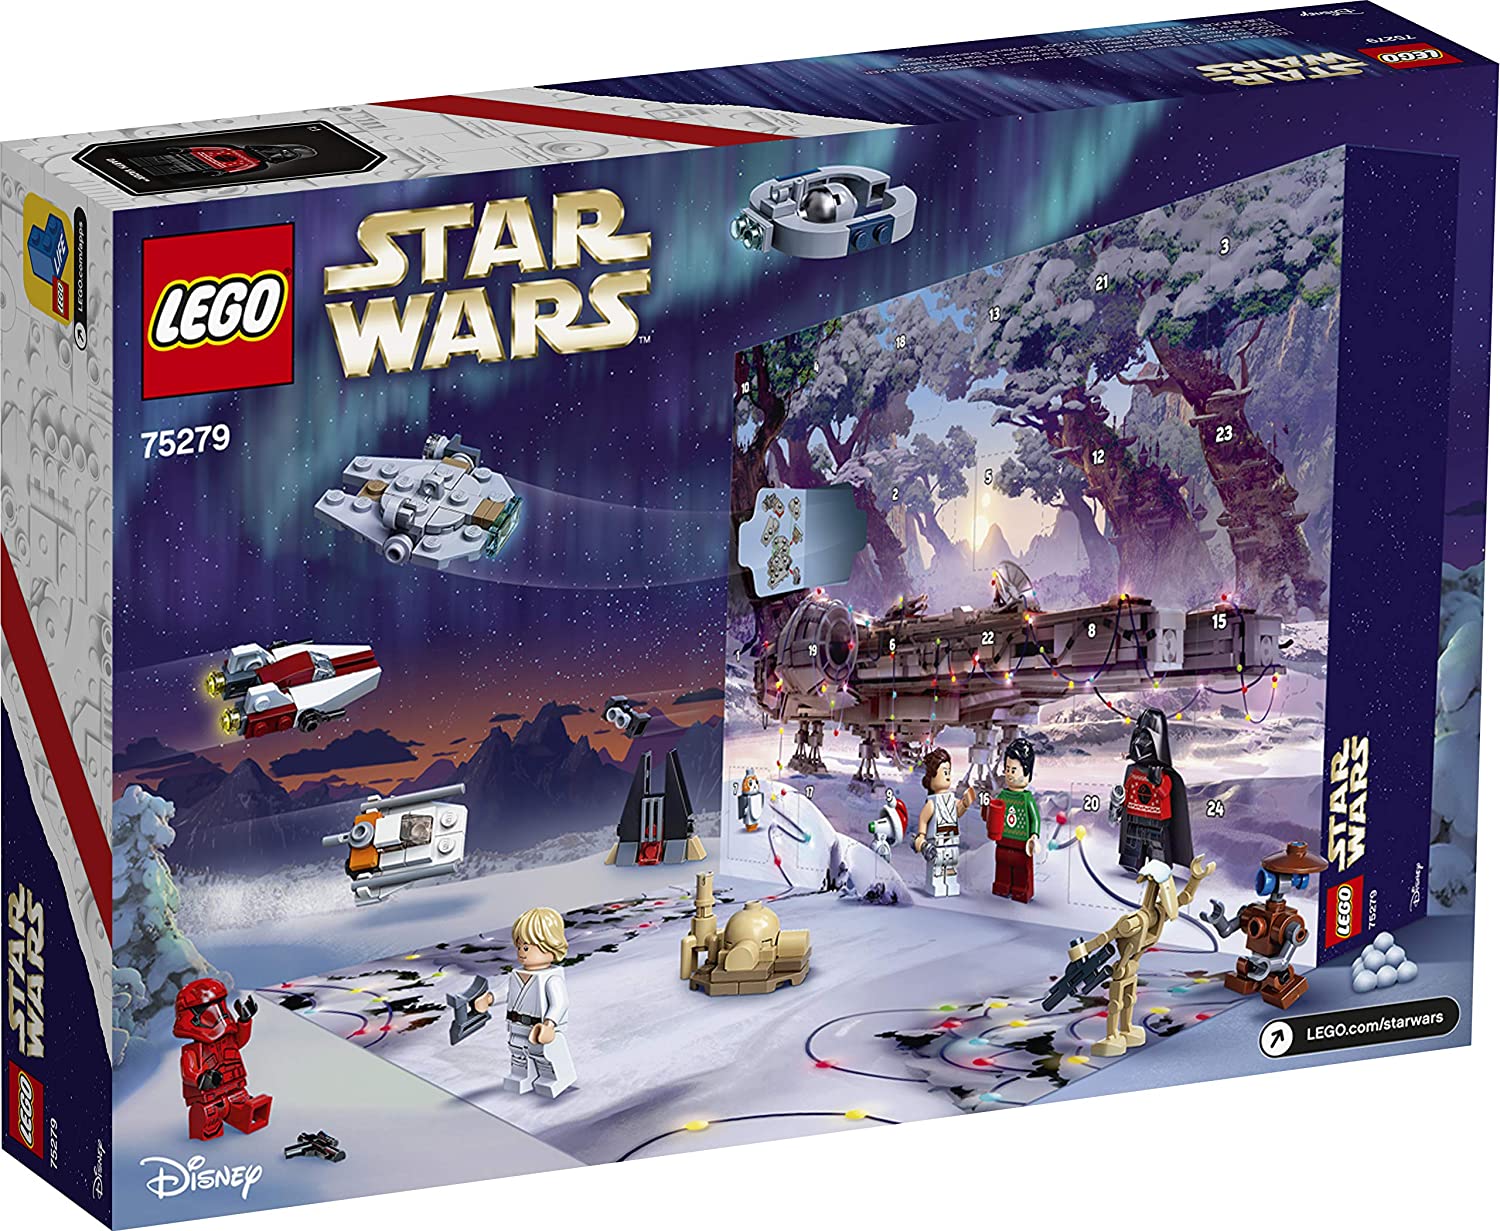 Lego Star Wars calendario dell'avvento 2020